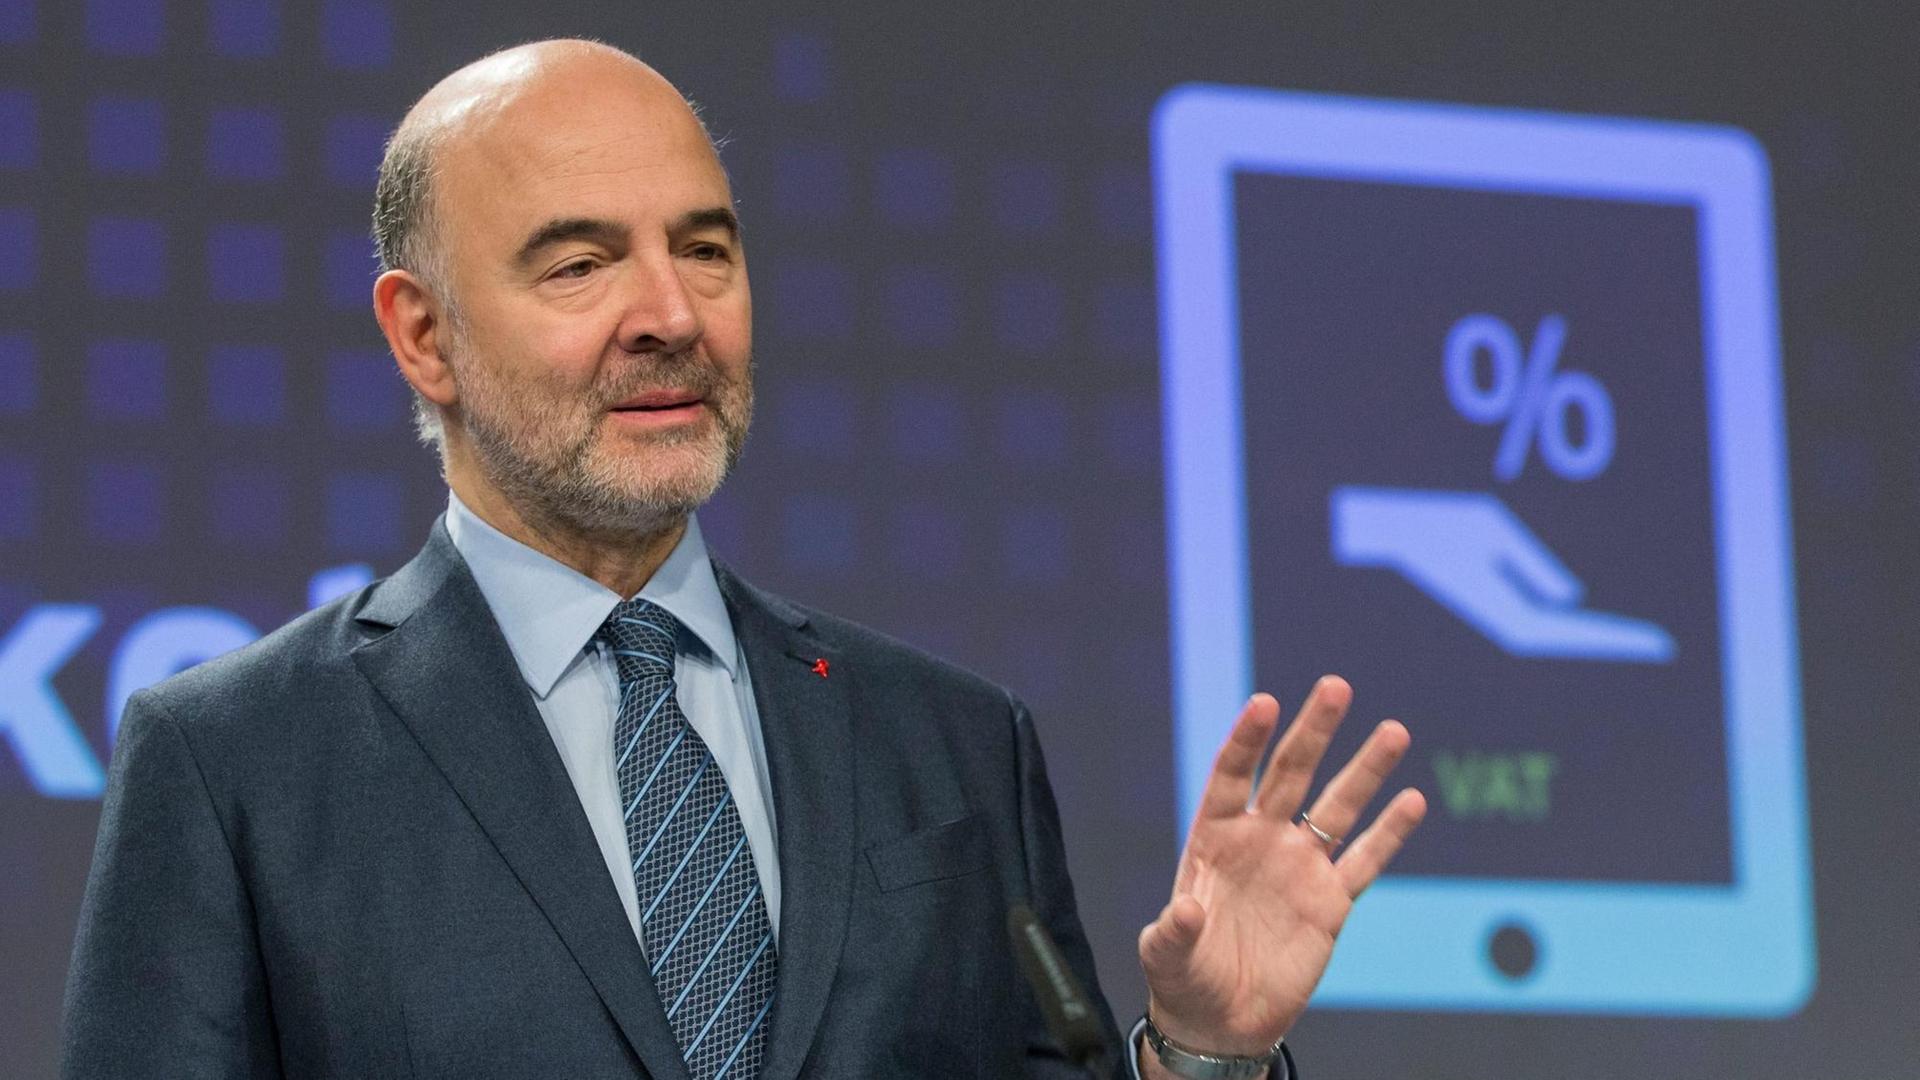 Pierre Moscovici spricht bei einer Pressekonferenz im Dezember 2016 inm Brüssel . Im hintergrund ist ein stilisiertes Tablet abgebildet, auf dem eine stilisierte Hand und ein prozentzeichen zu sehen sind.